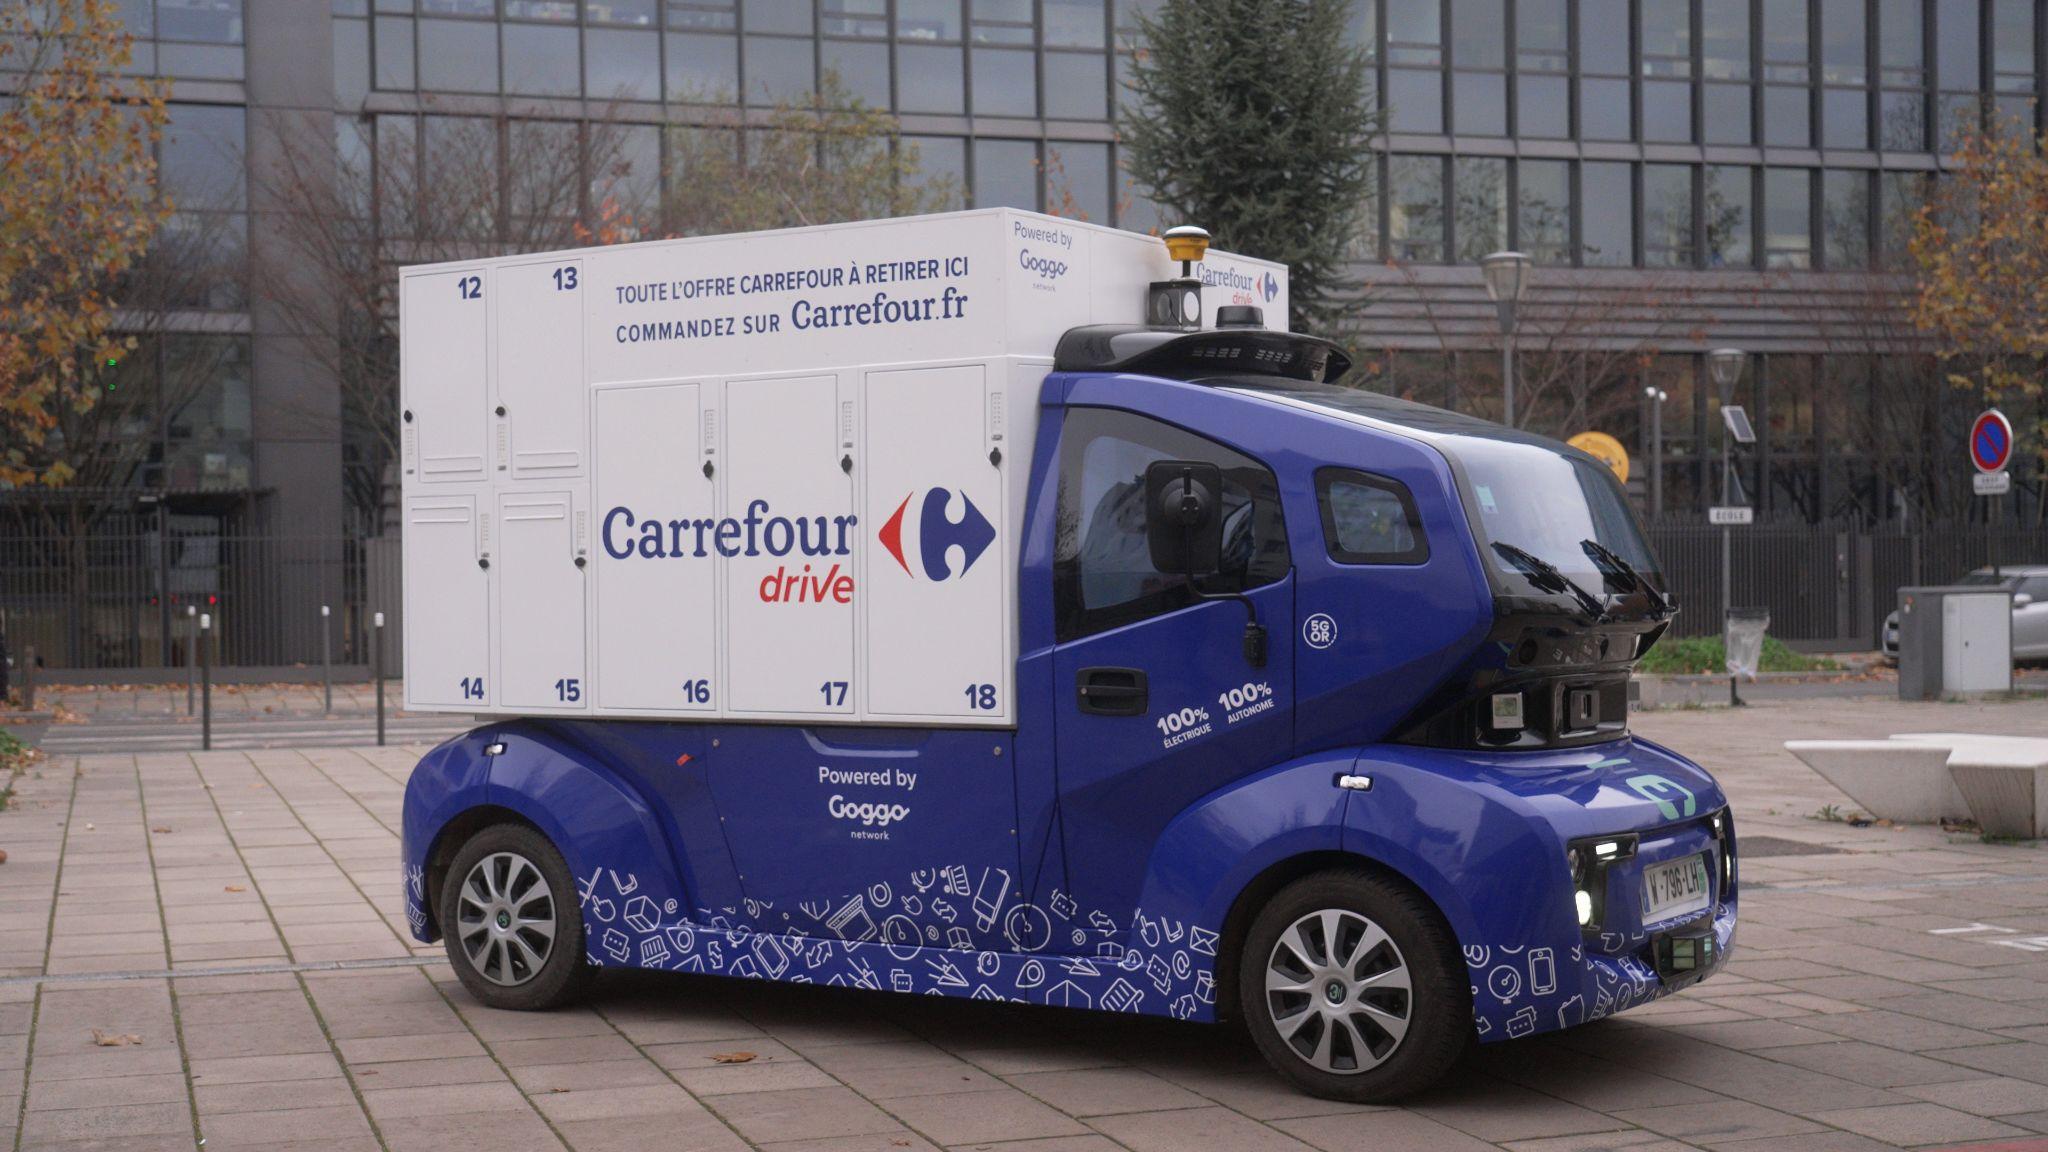 Carrefour autonomous shuttle